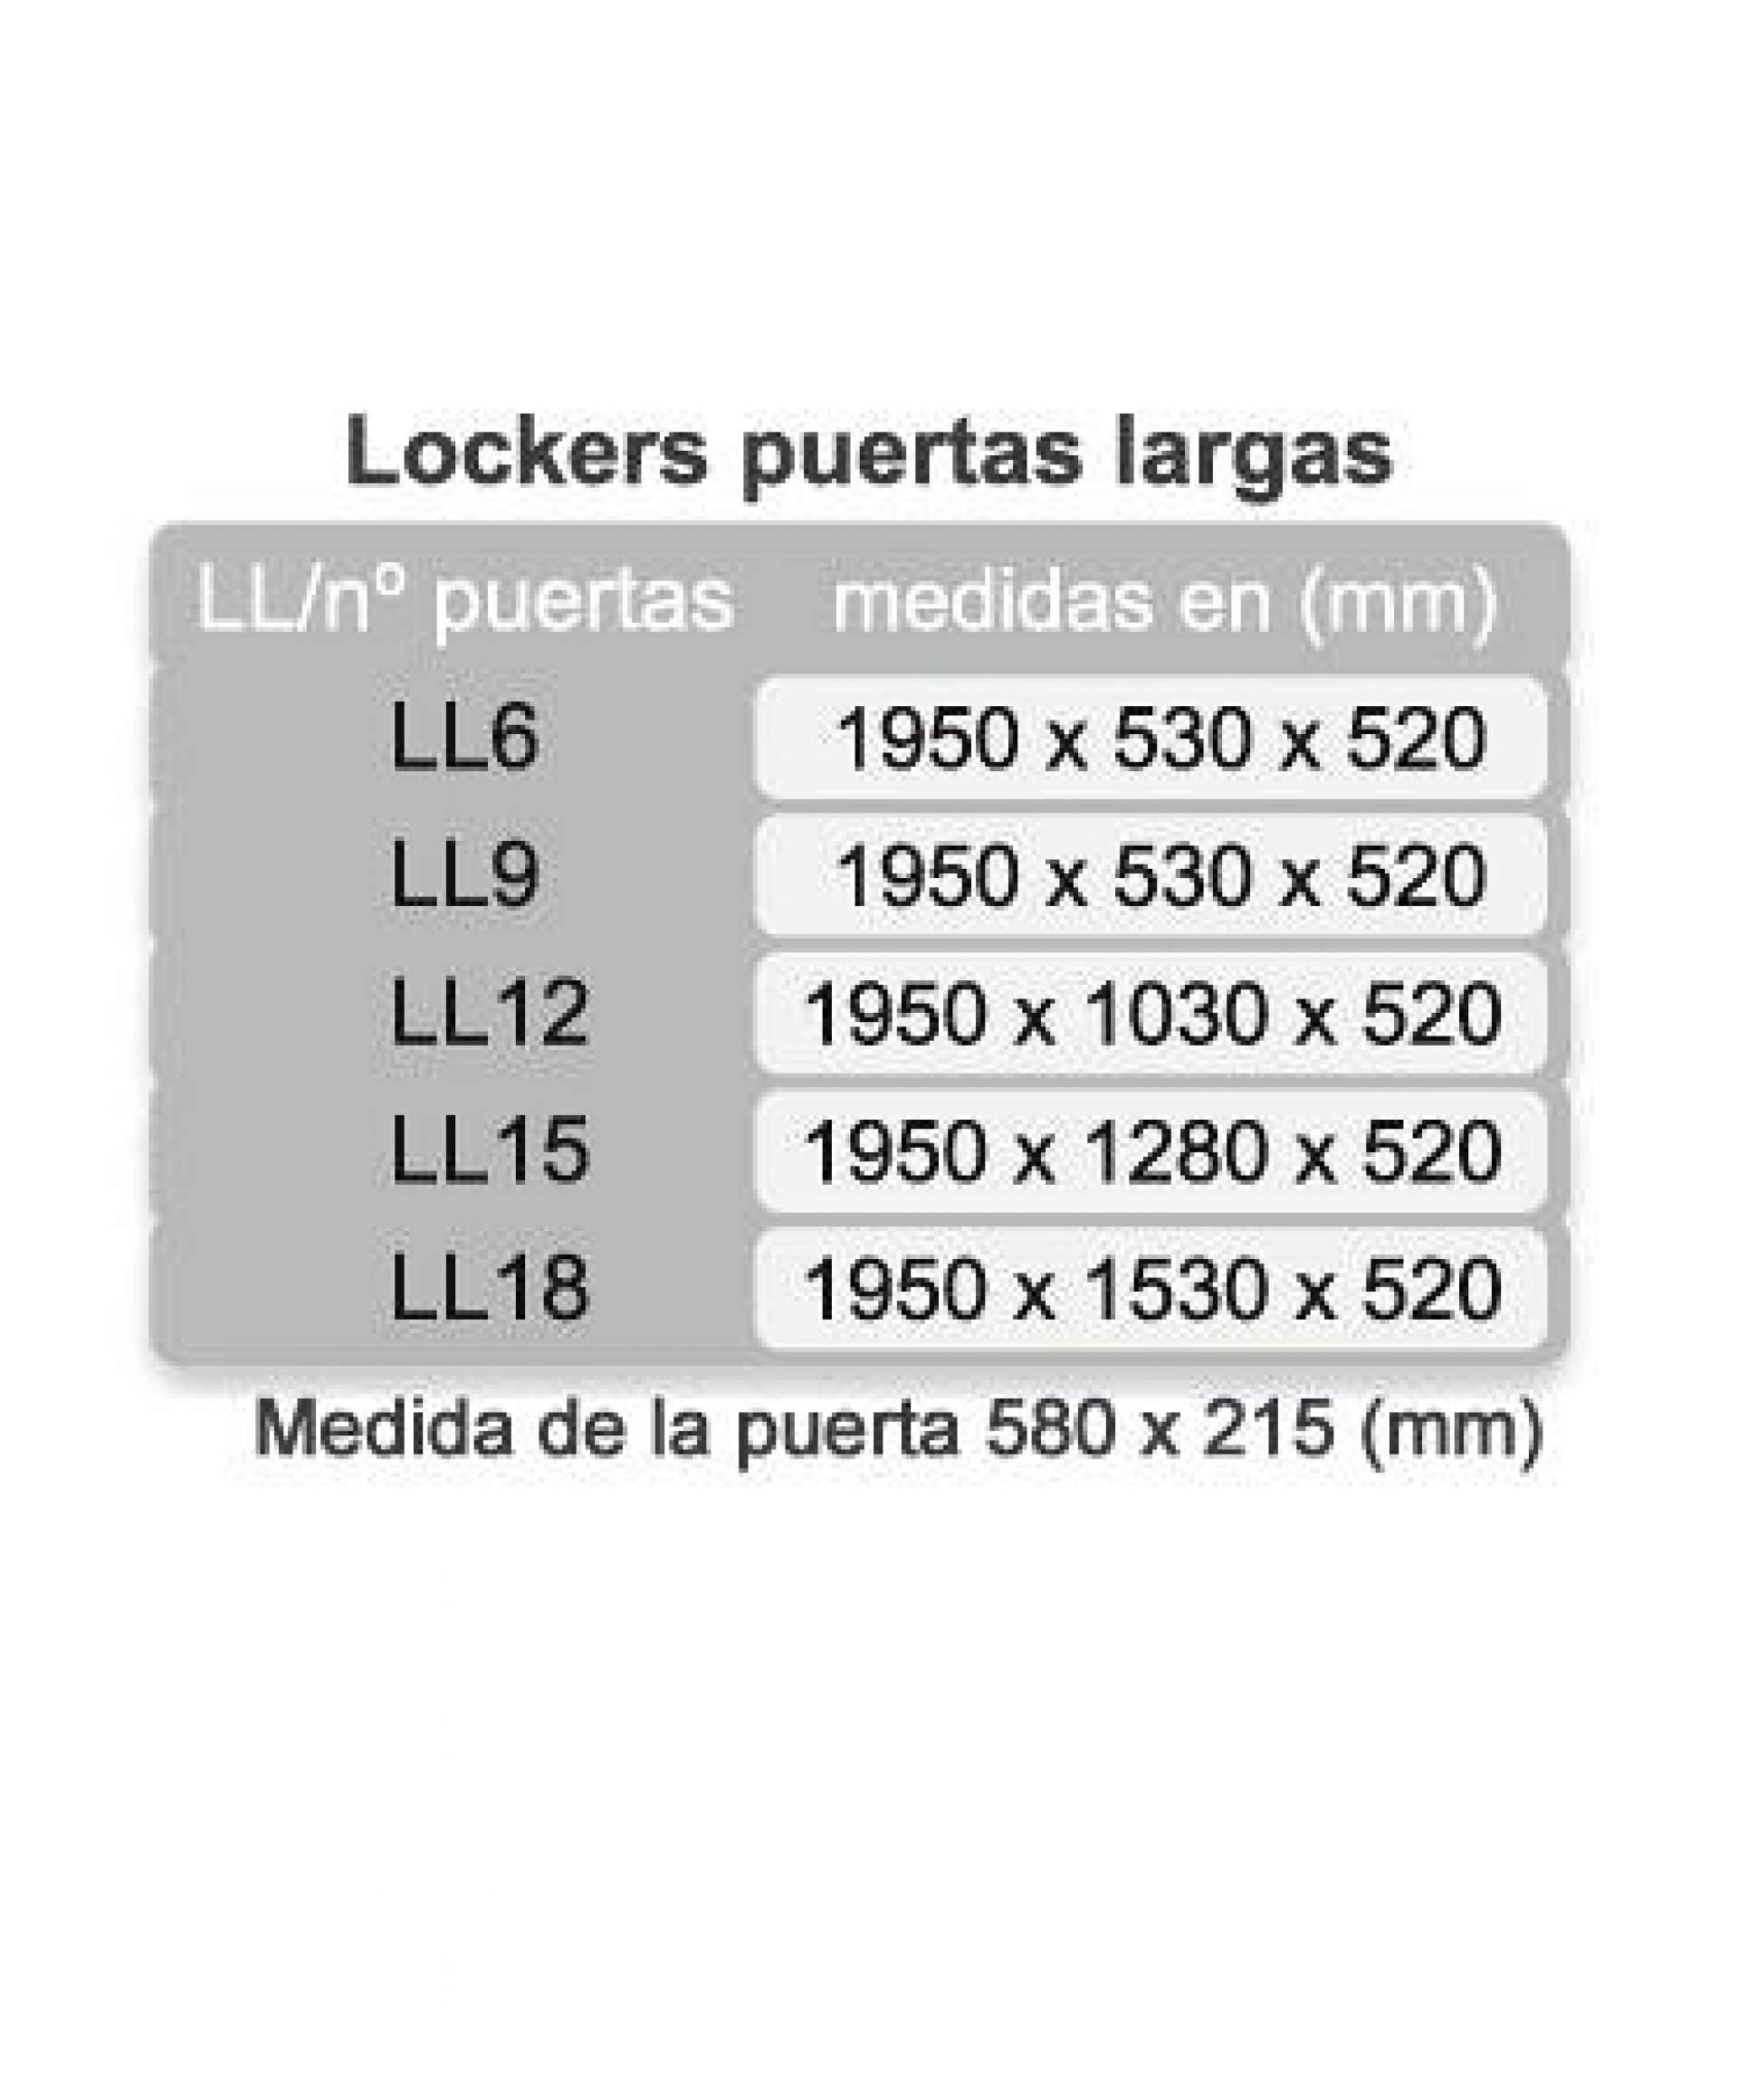 lockers-puertas-largas-1594217540.jpg